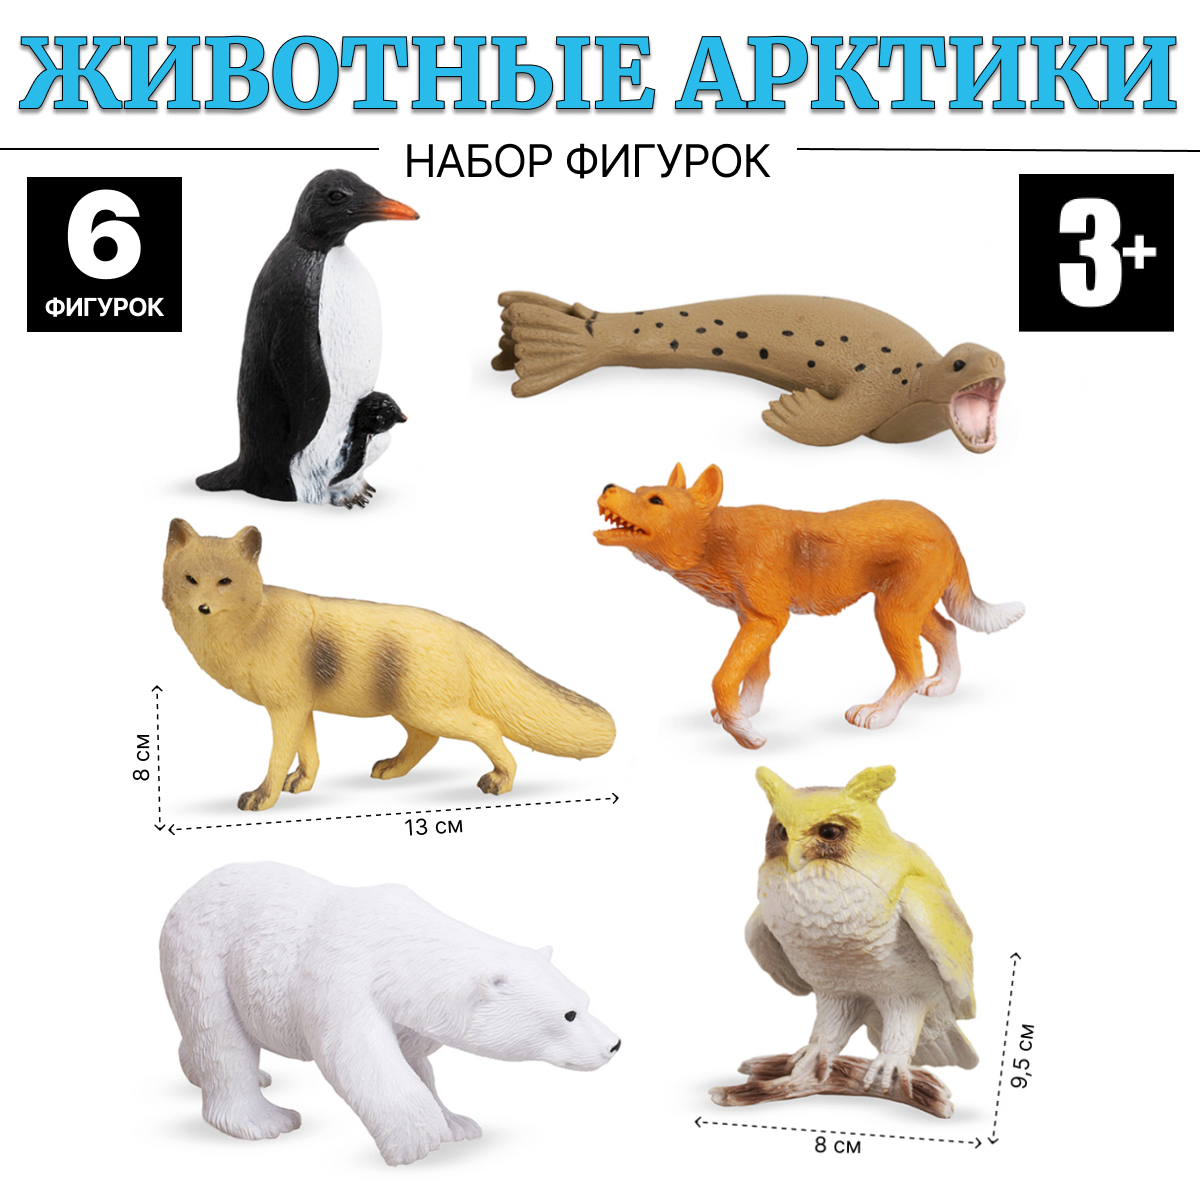 Игровой набор животные Арктики FAUNA THE WORLD 6 штук Tongde JD7-007A